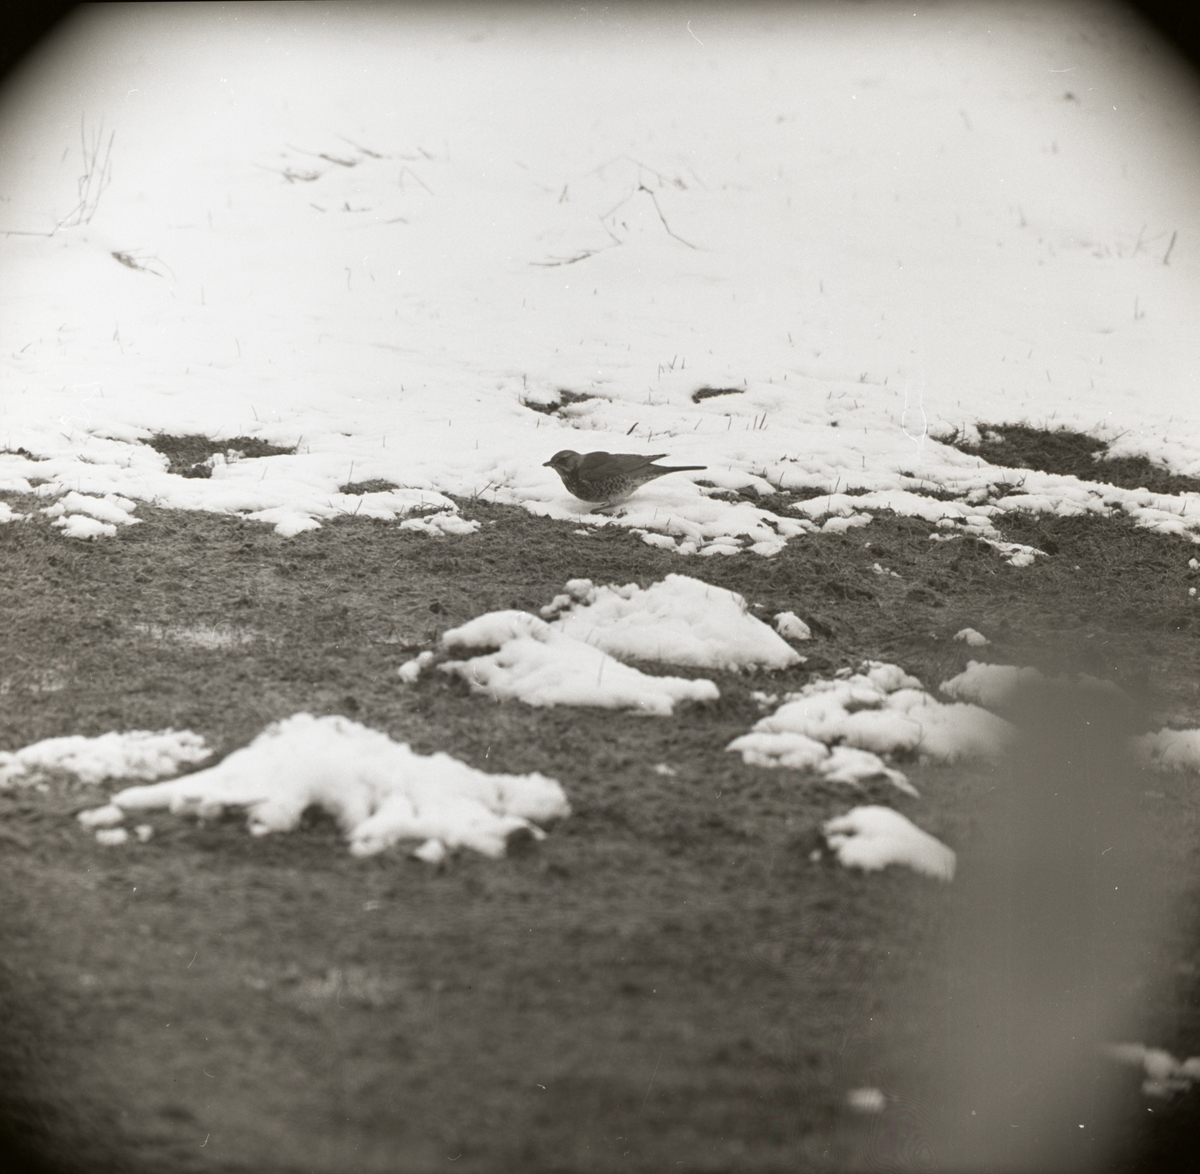 En "snöskata" går i vårsnön, 1969.